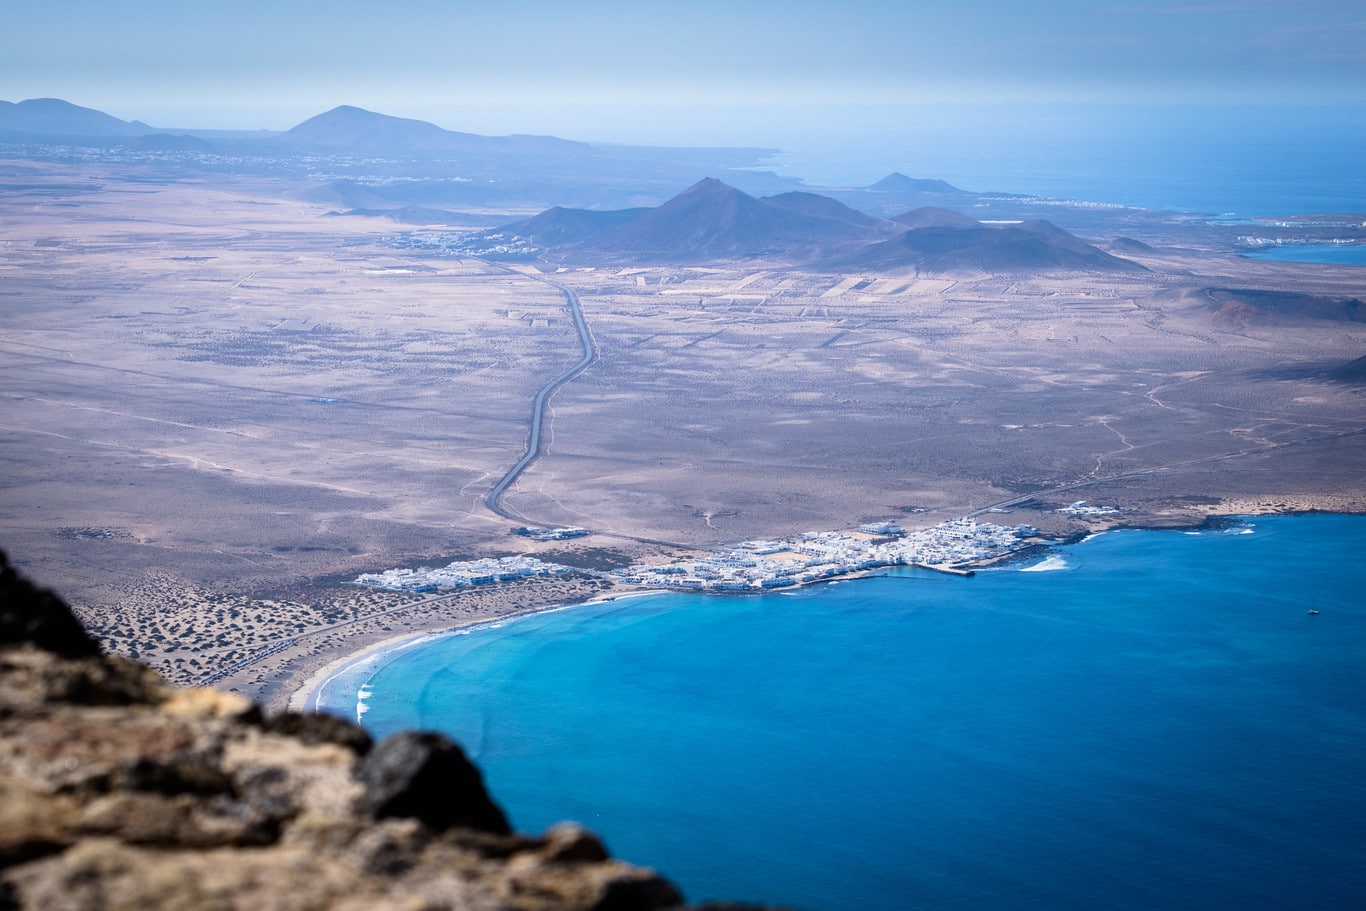 Vista desde los acantilados de Famara en el norte de Lanzarote